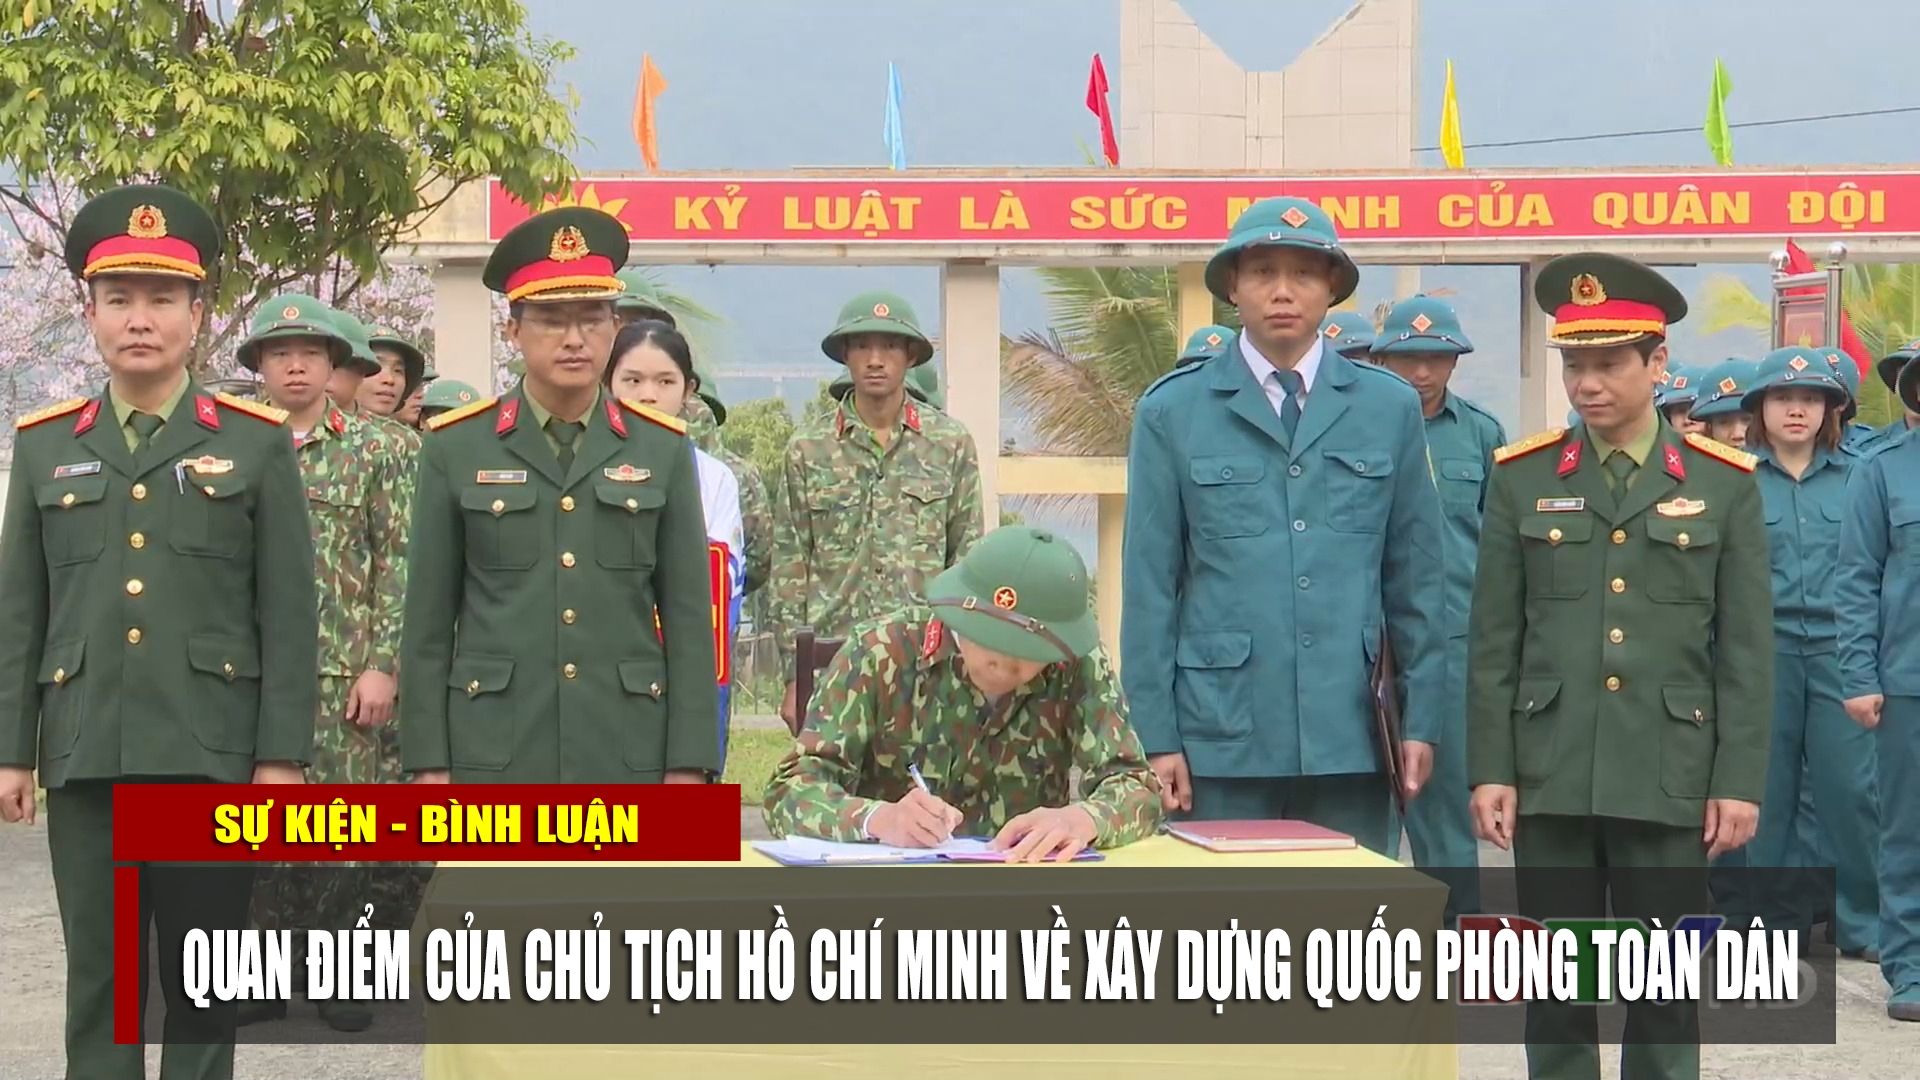 Quan điểm của Chủ tịch Hồ Chí Minh về xây dựng quốc phòng toàn dân